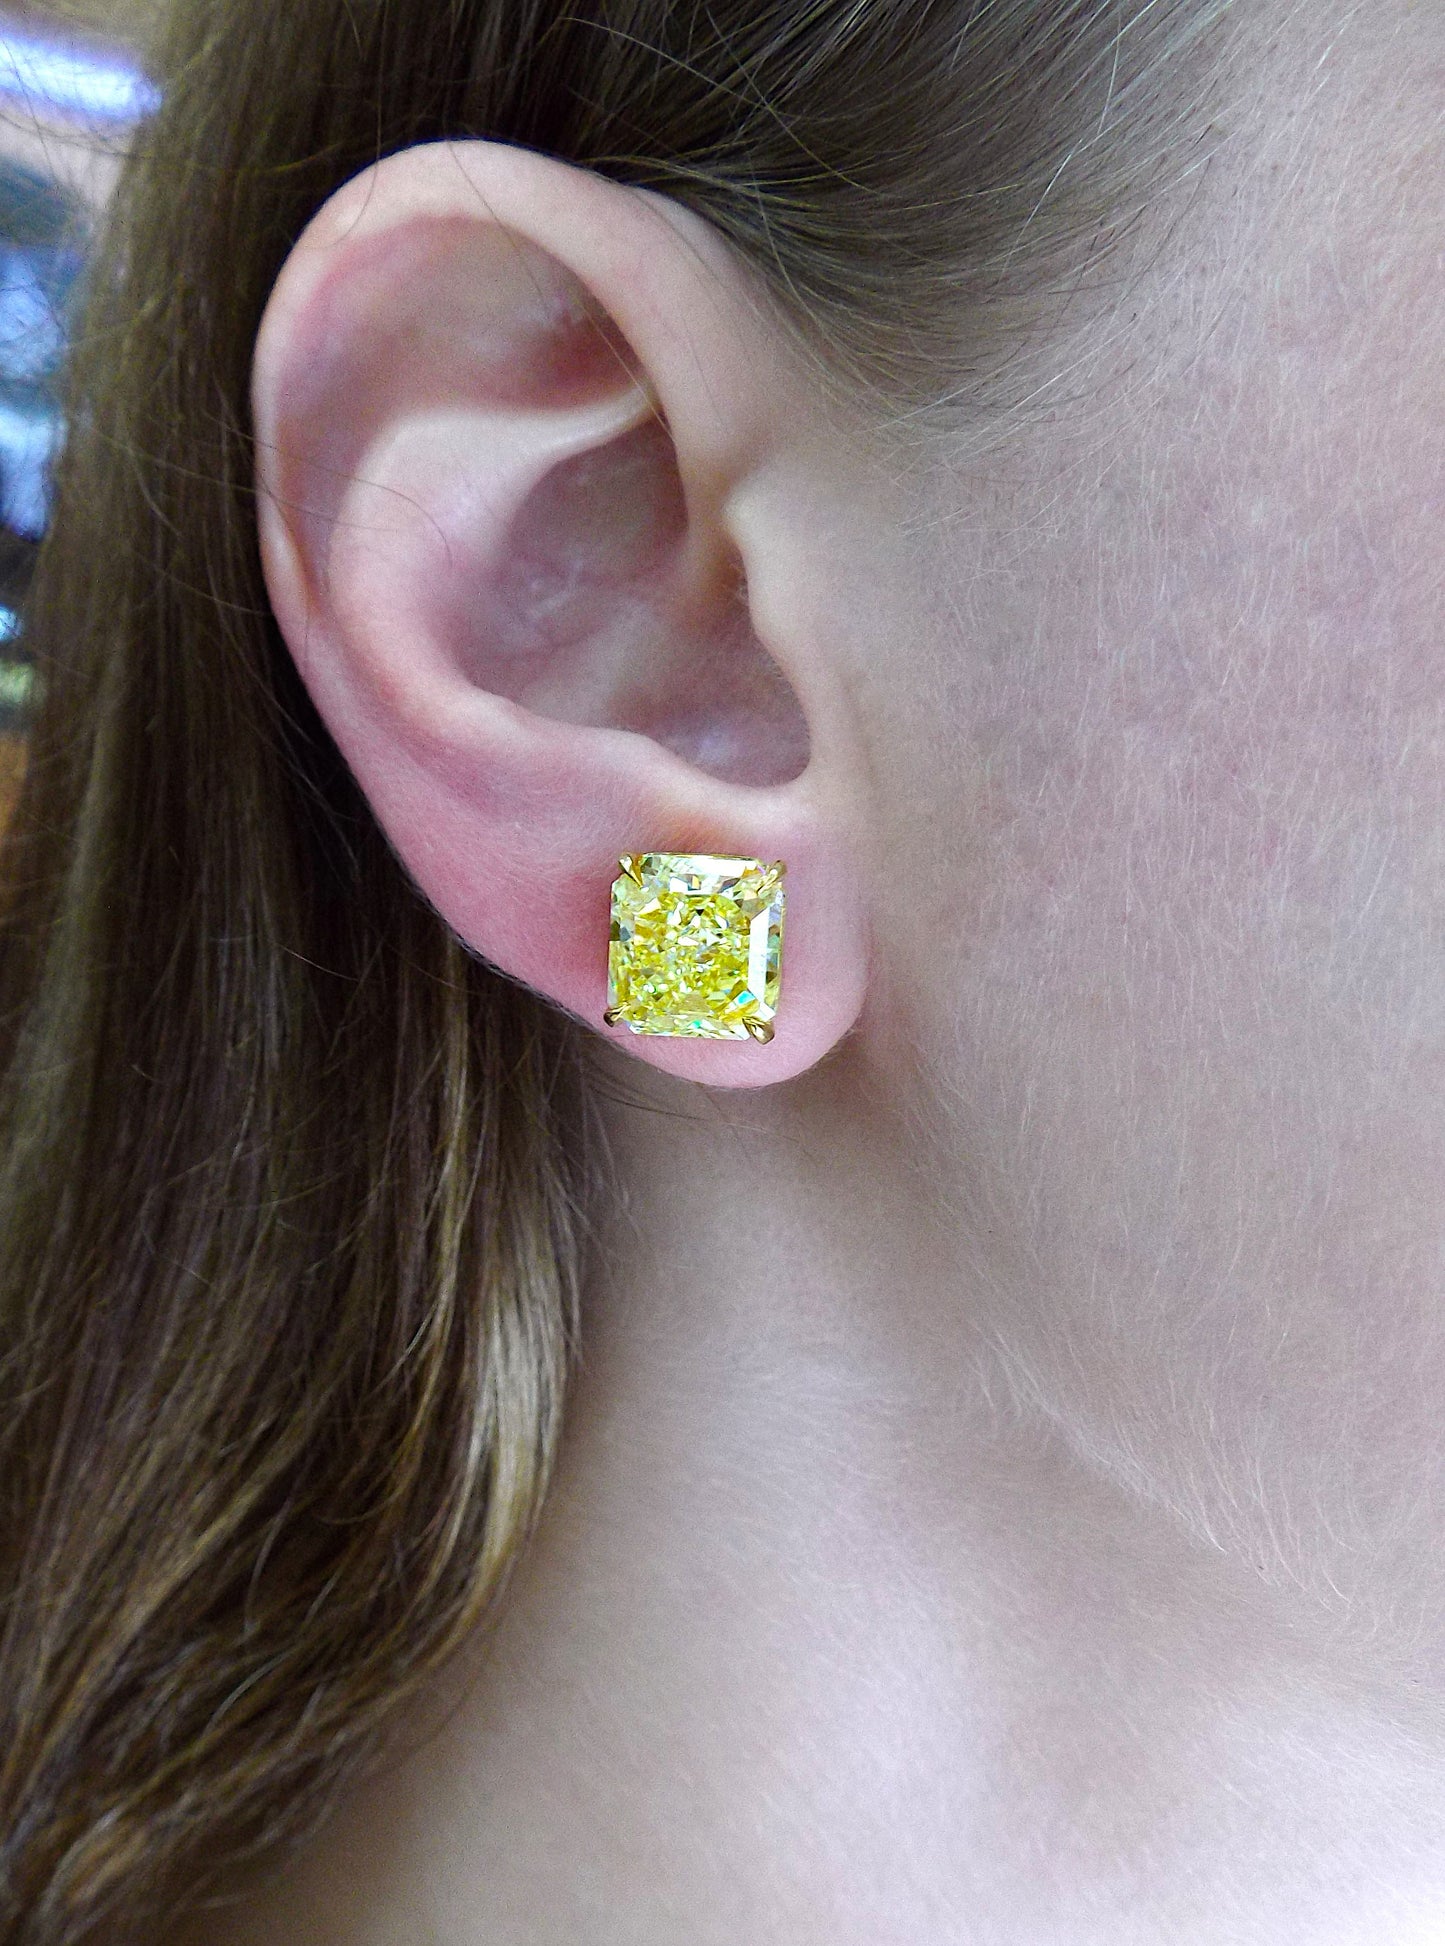 Fancy Yellow Diamond Gold Stud Earrings